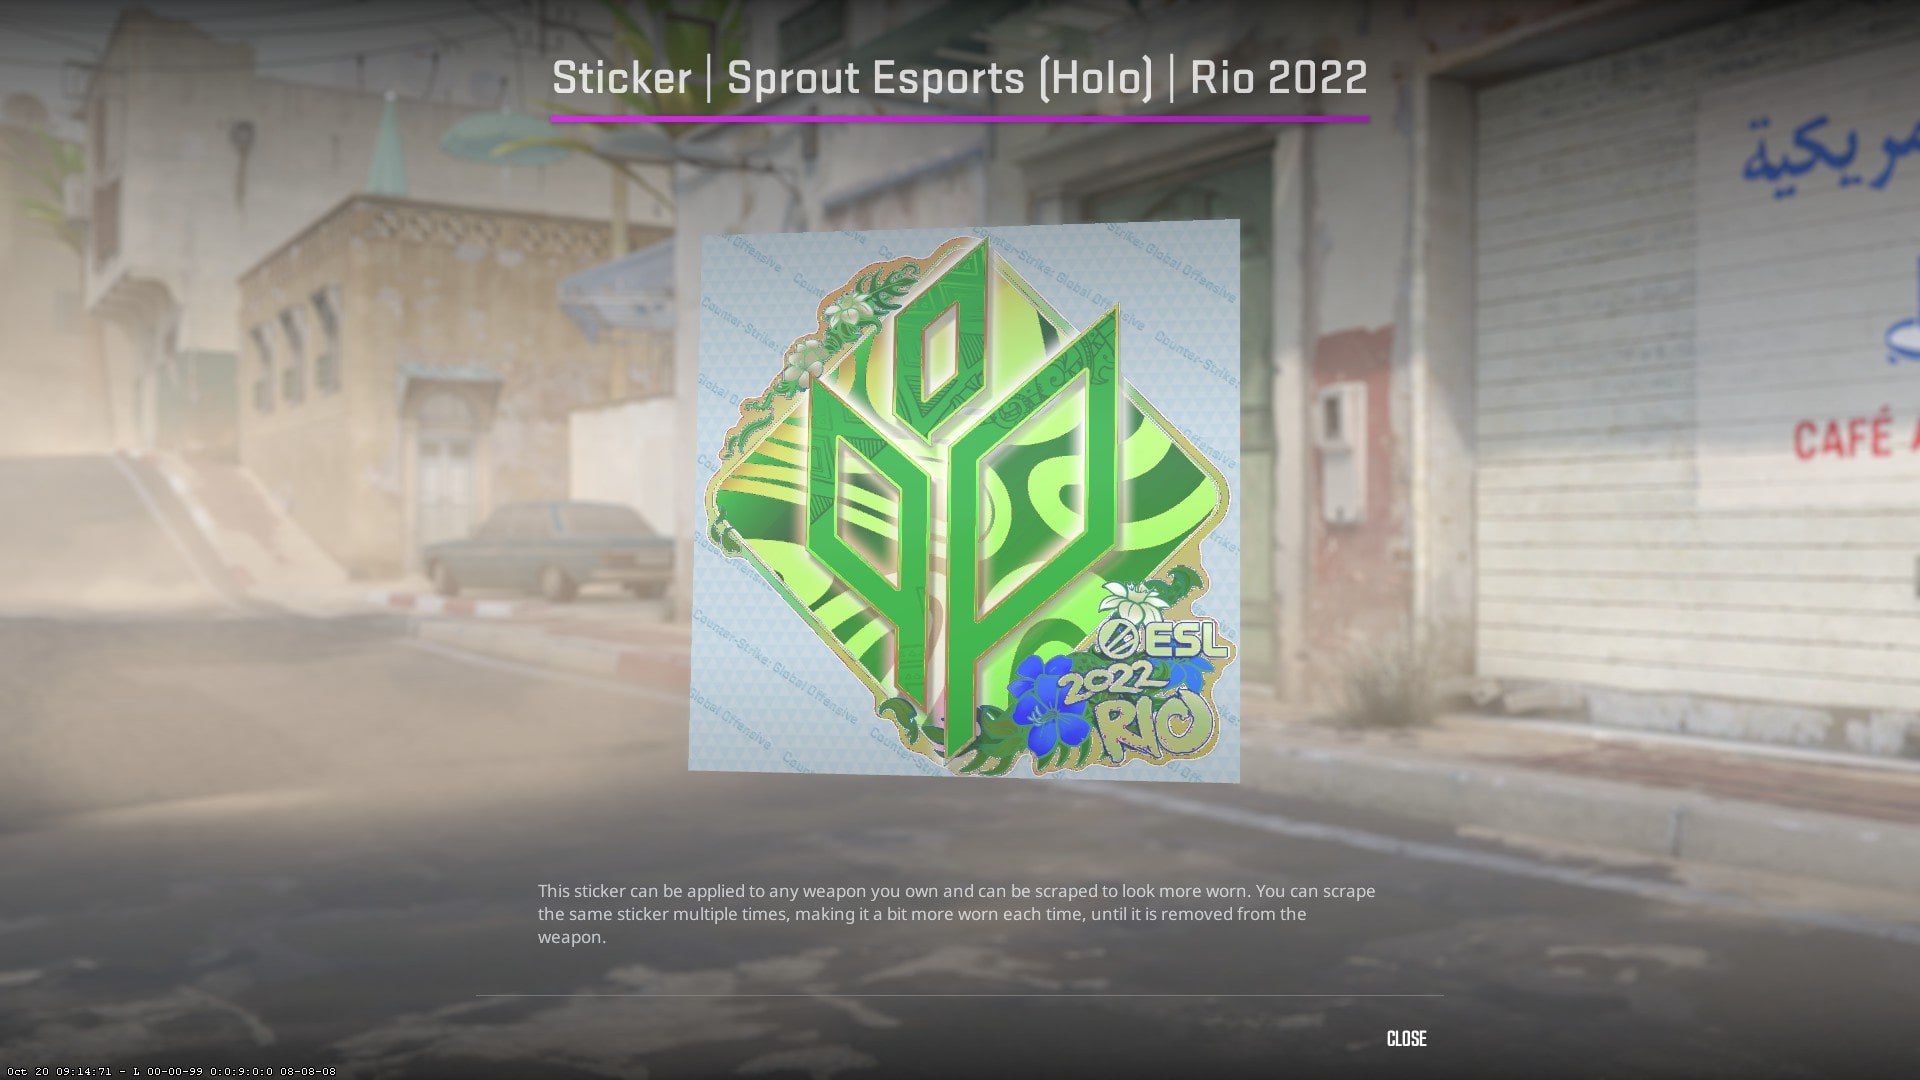 Sticker | Sprout Esports (Holo) | Rio 2022